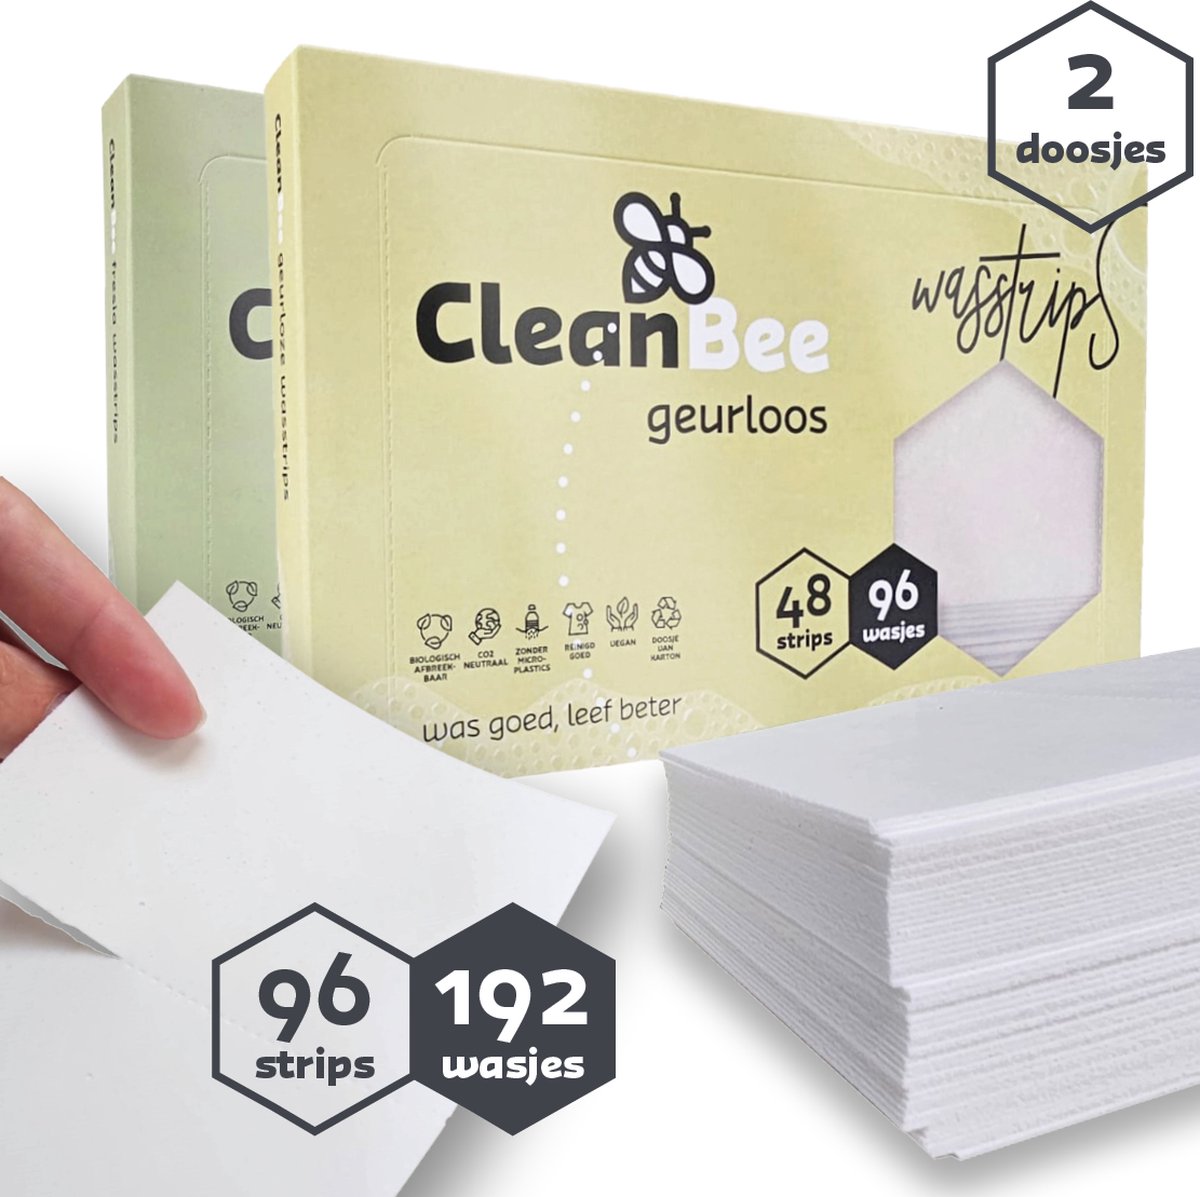 CleanBee® proefpakket 2 x 96 wasbeurten - Geurloos - Fresia - Wasdoekjes - Wasmiddel Voordeelverpakking - Eco - Wasstrips - Duurzaam - Plasticvrij -